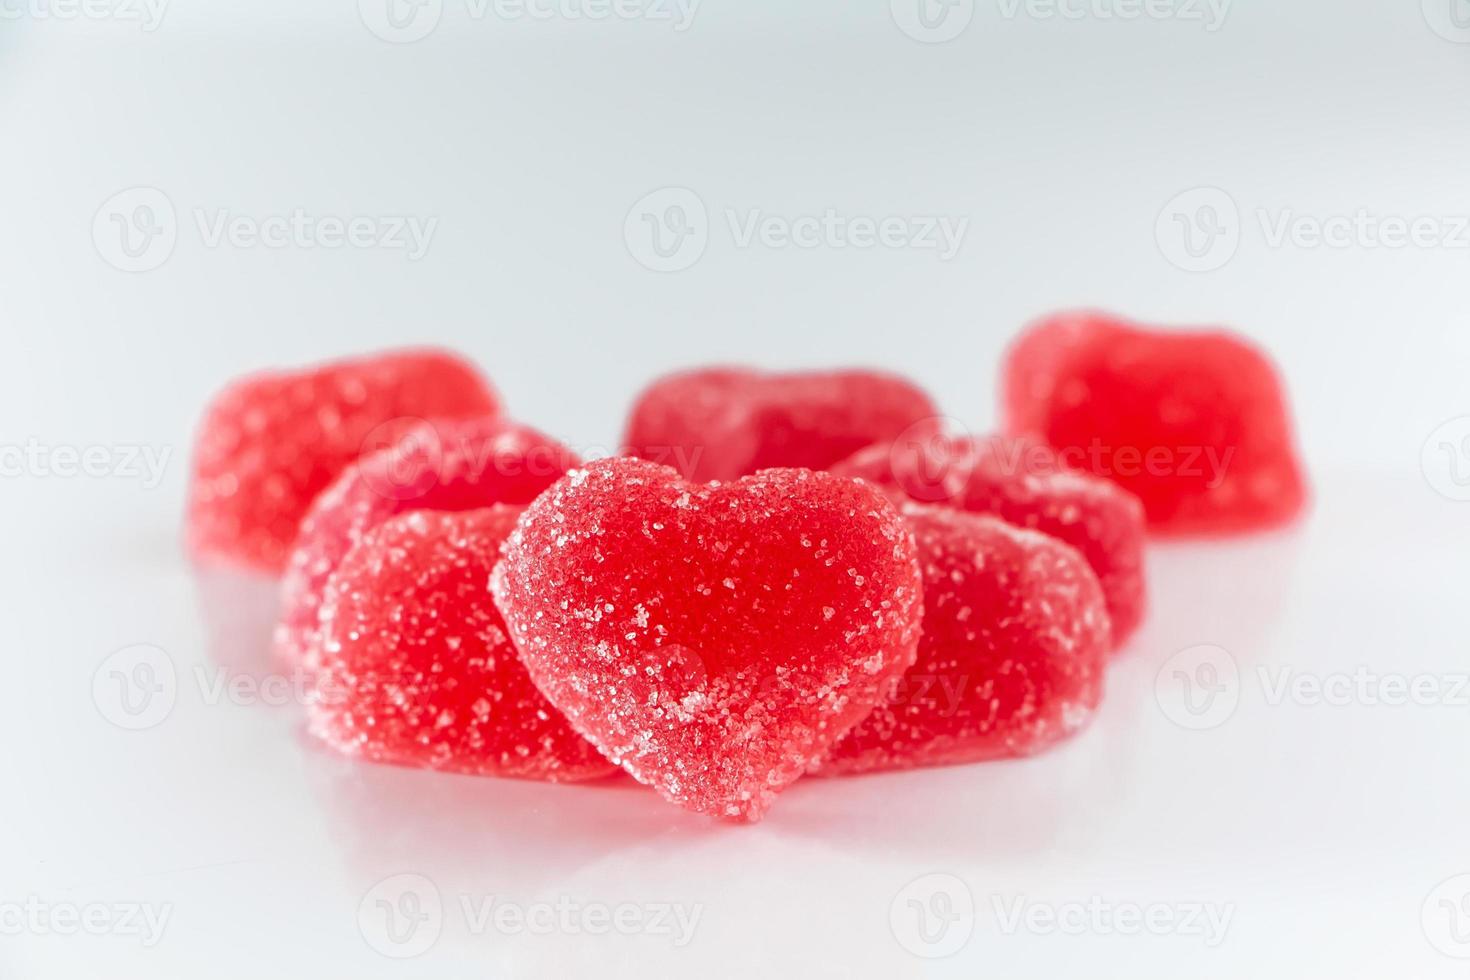 marmelade en forme de coeur pour la saint valentin photo